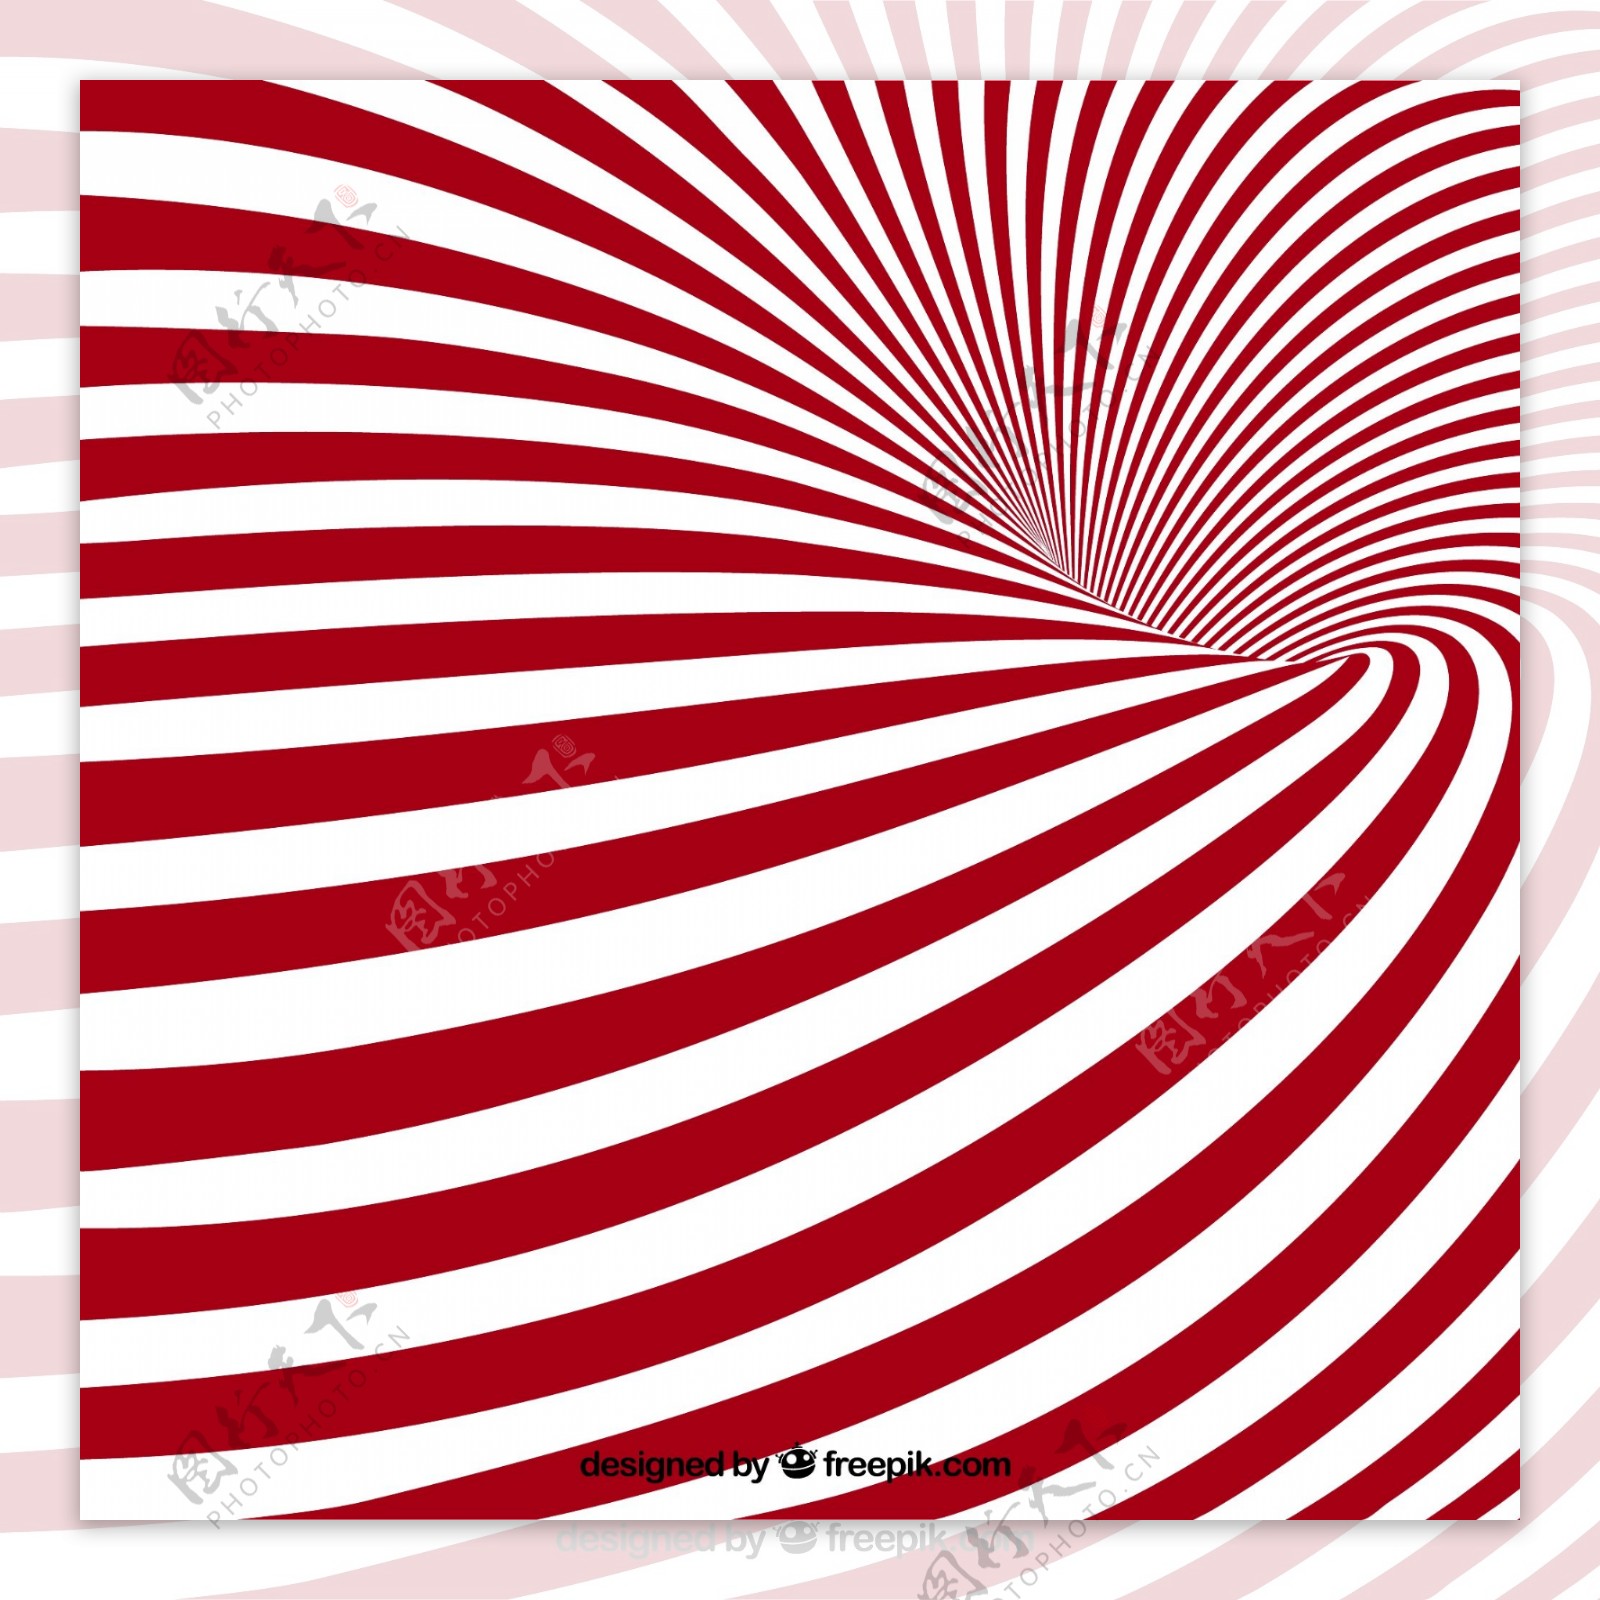 红白条纹漩涡背景矢量素材下载